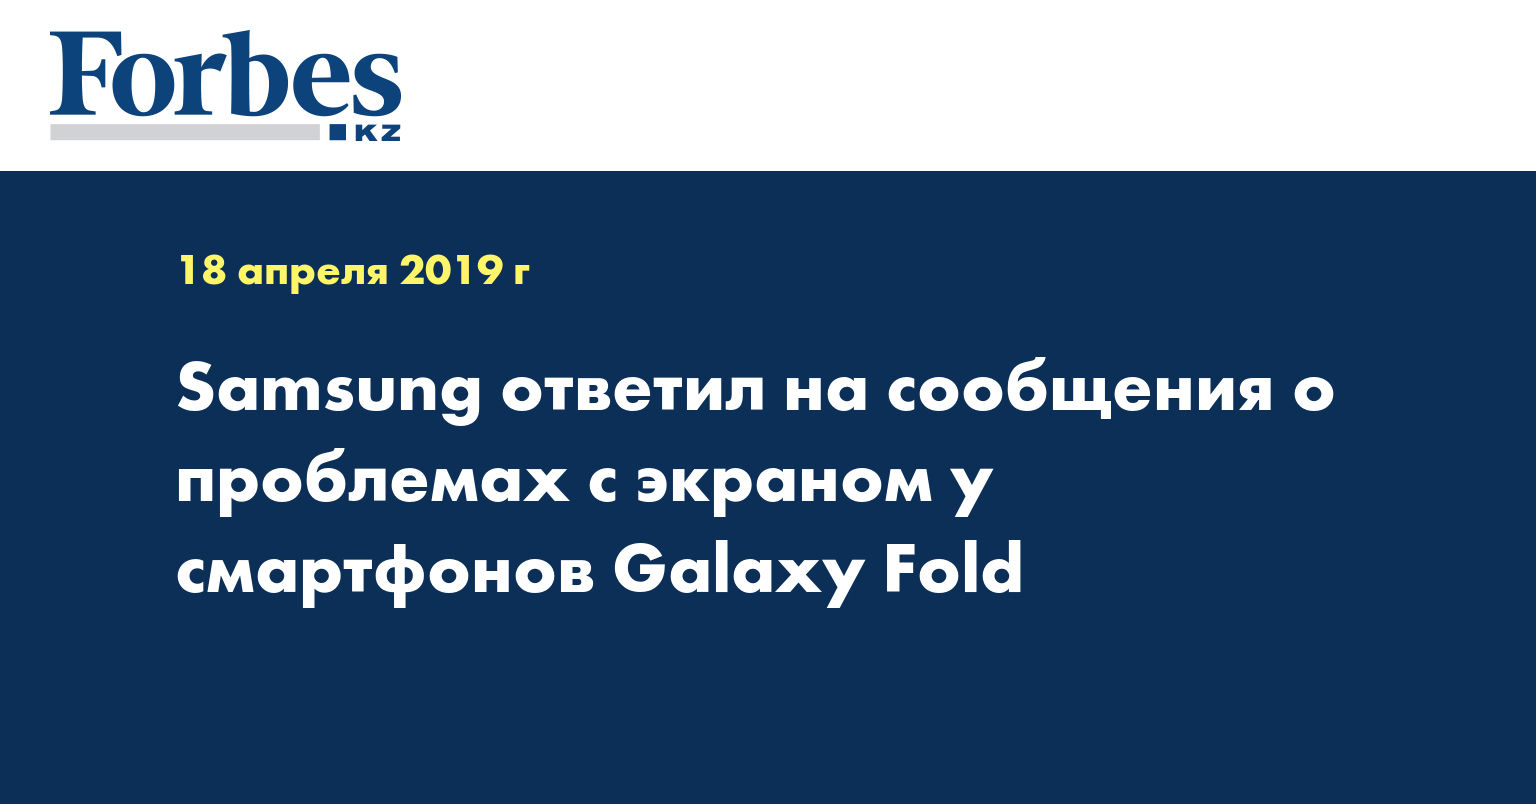 Samsung ответил на сообщения о проблемах с экраном у смартфонов Galaxy Fold